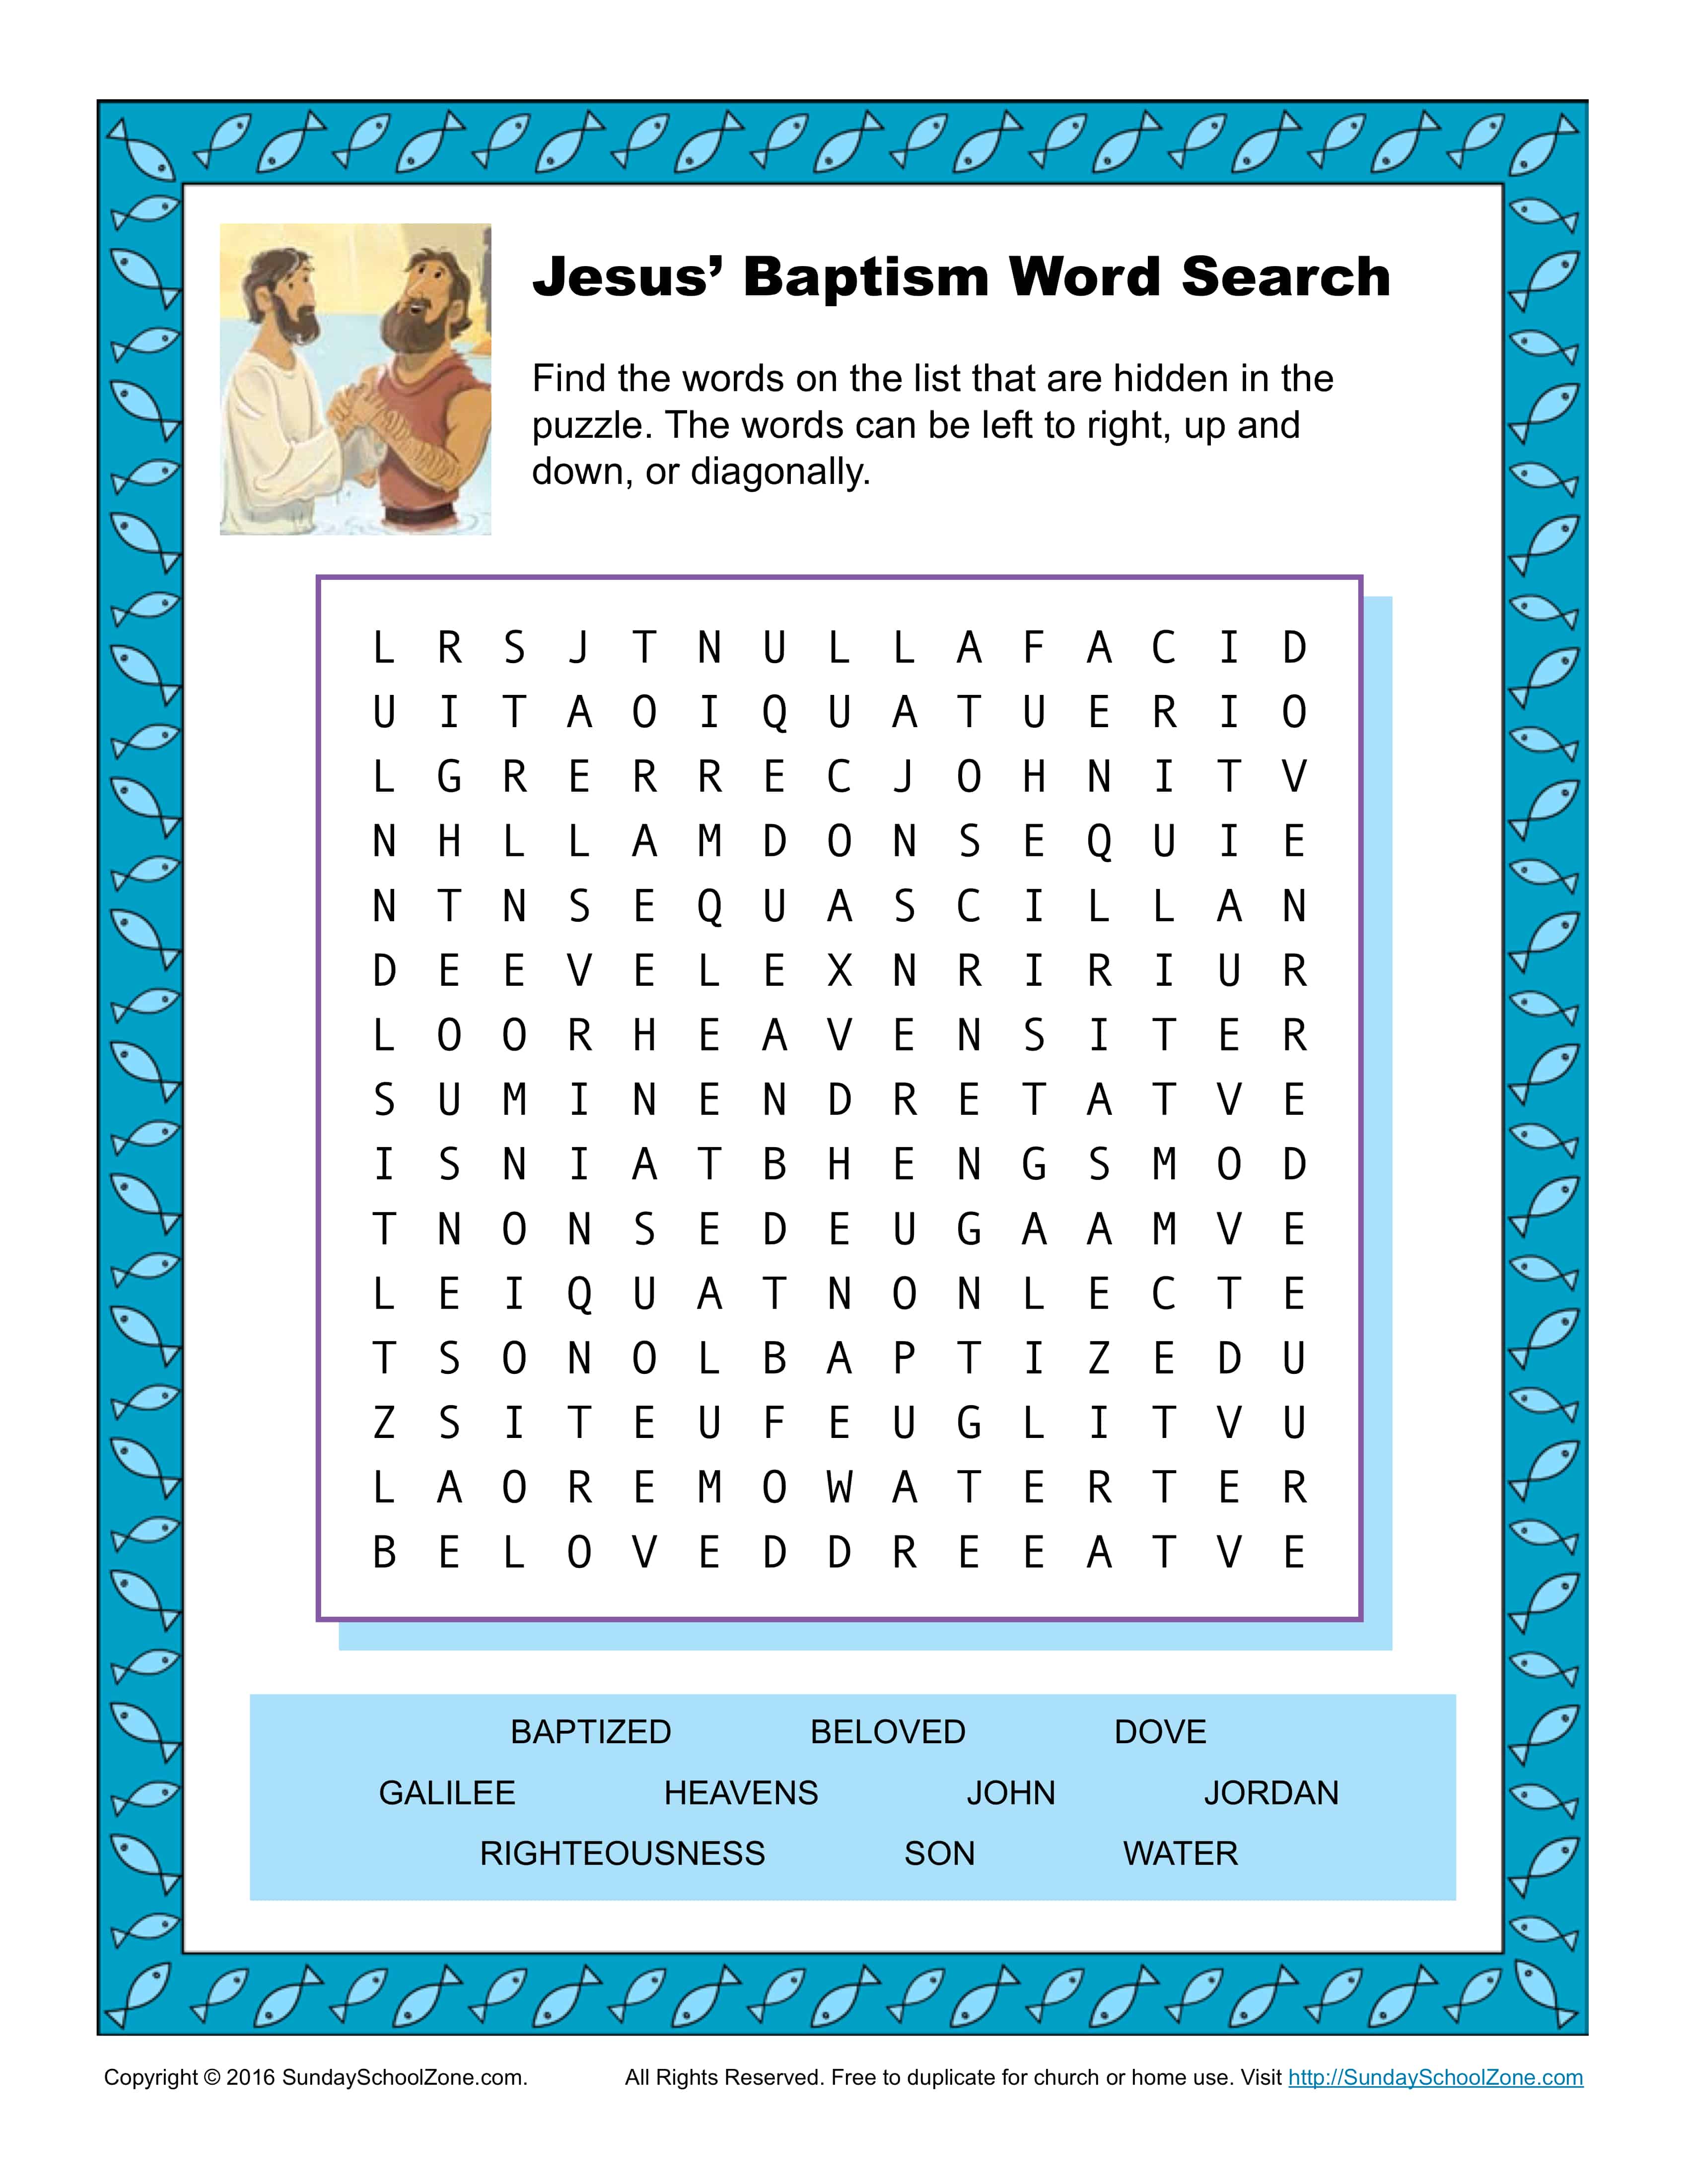 jesus-baptism-word-search-activity-children-s-bible-activities